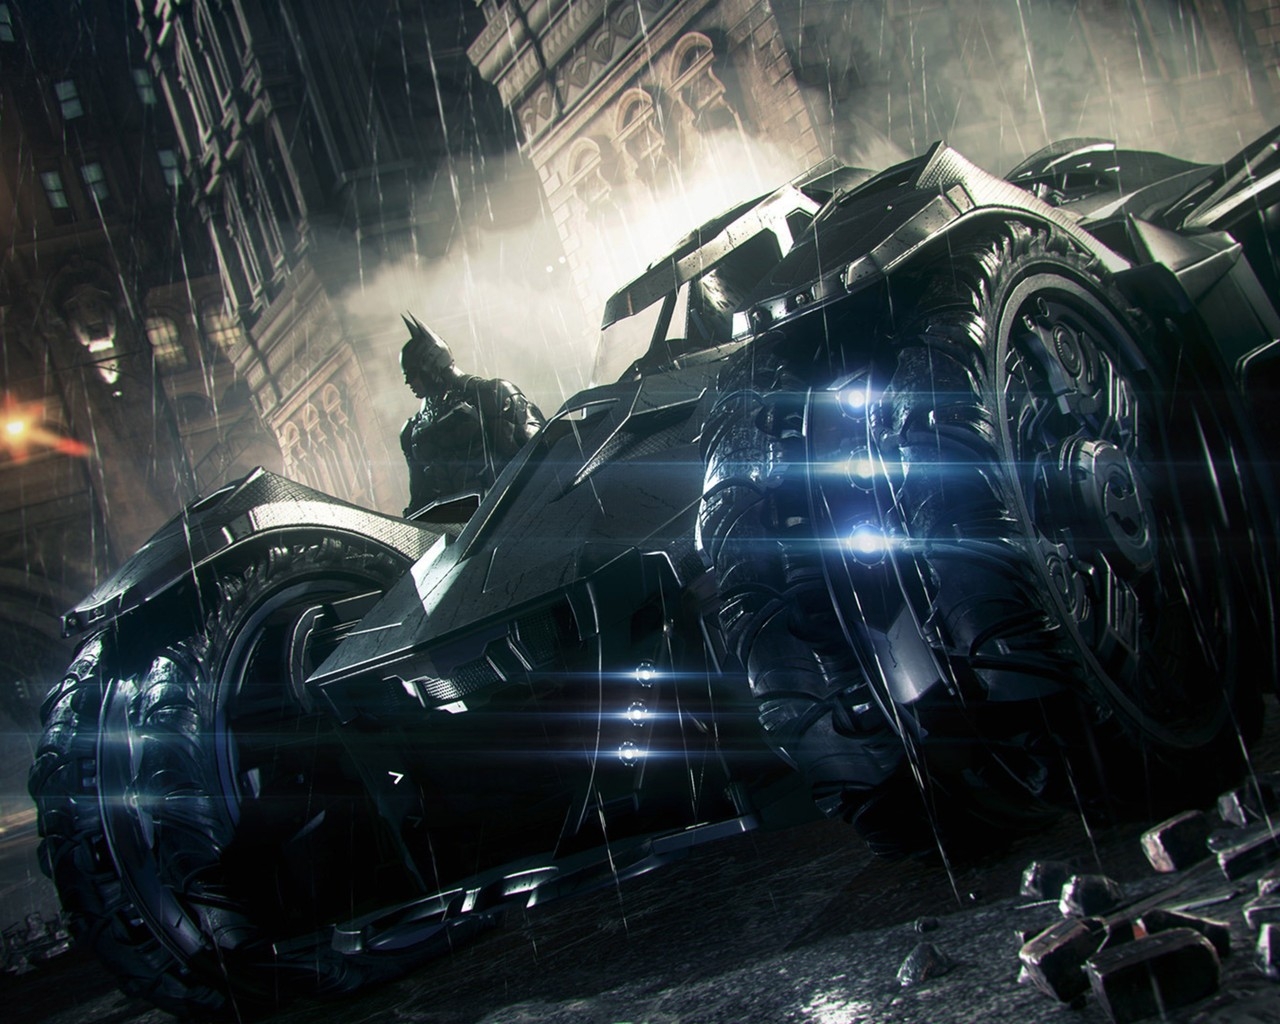 Batman Arkham Knight 3 Car for 1280 x 1024 resolution